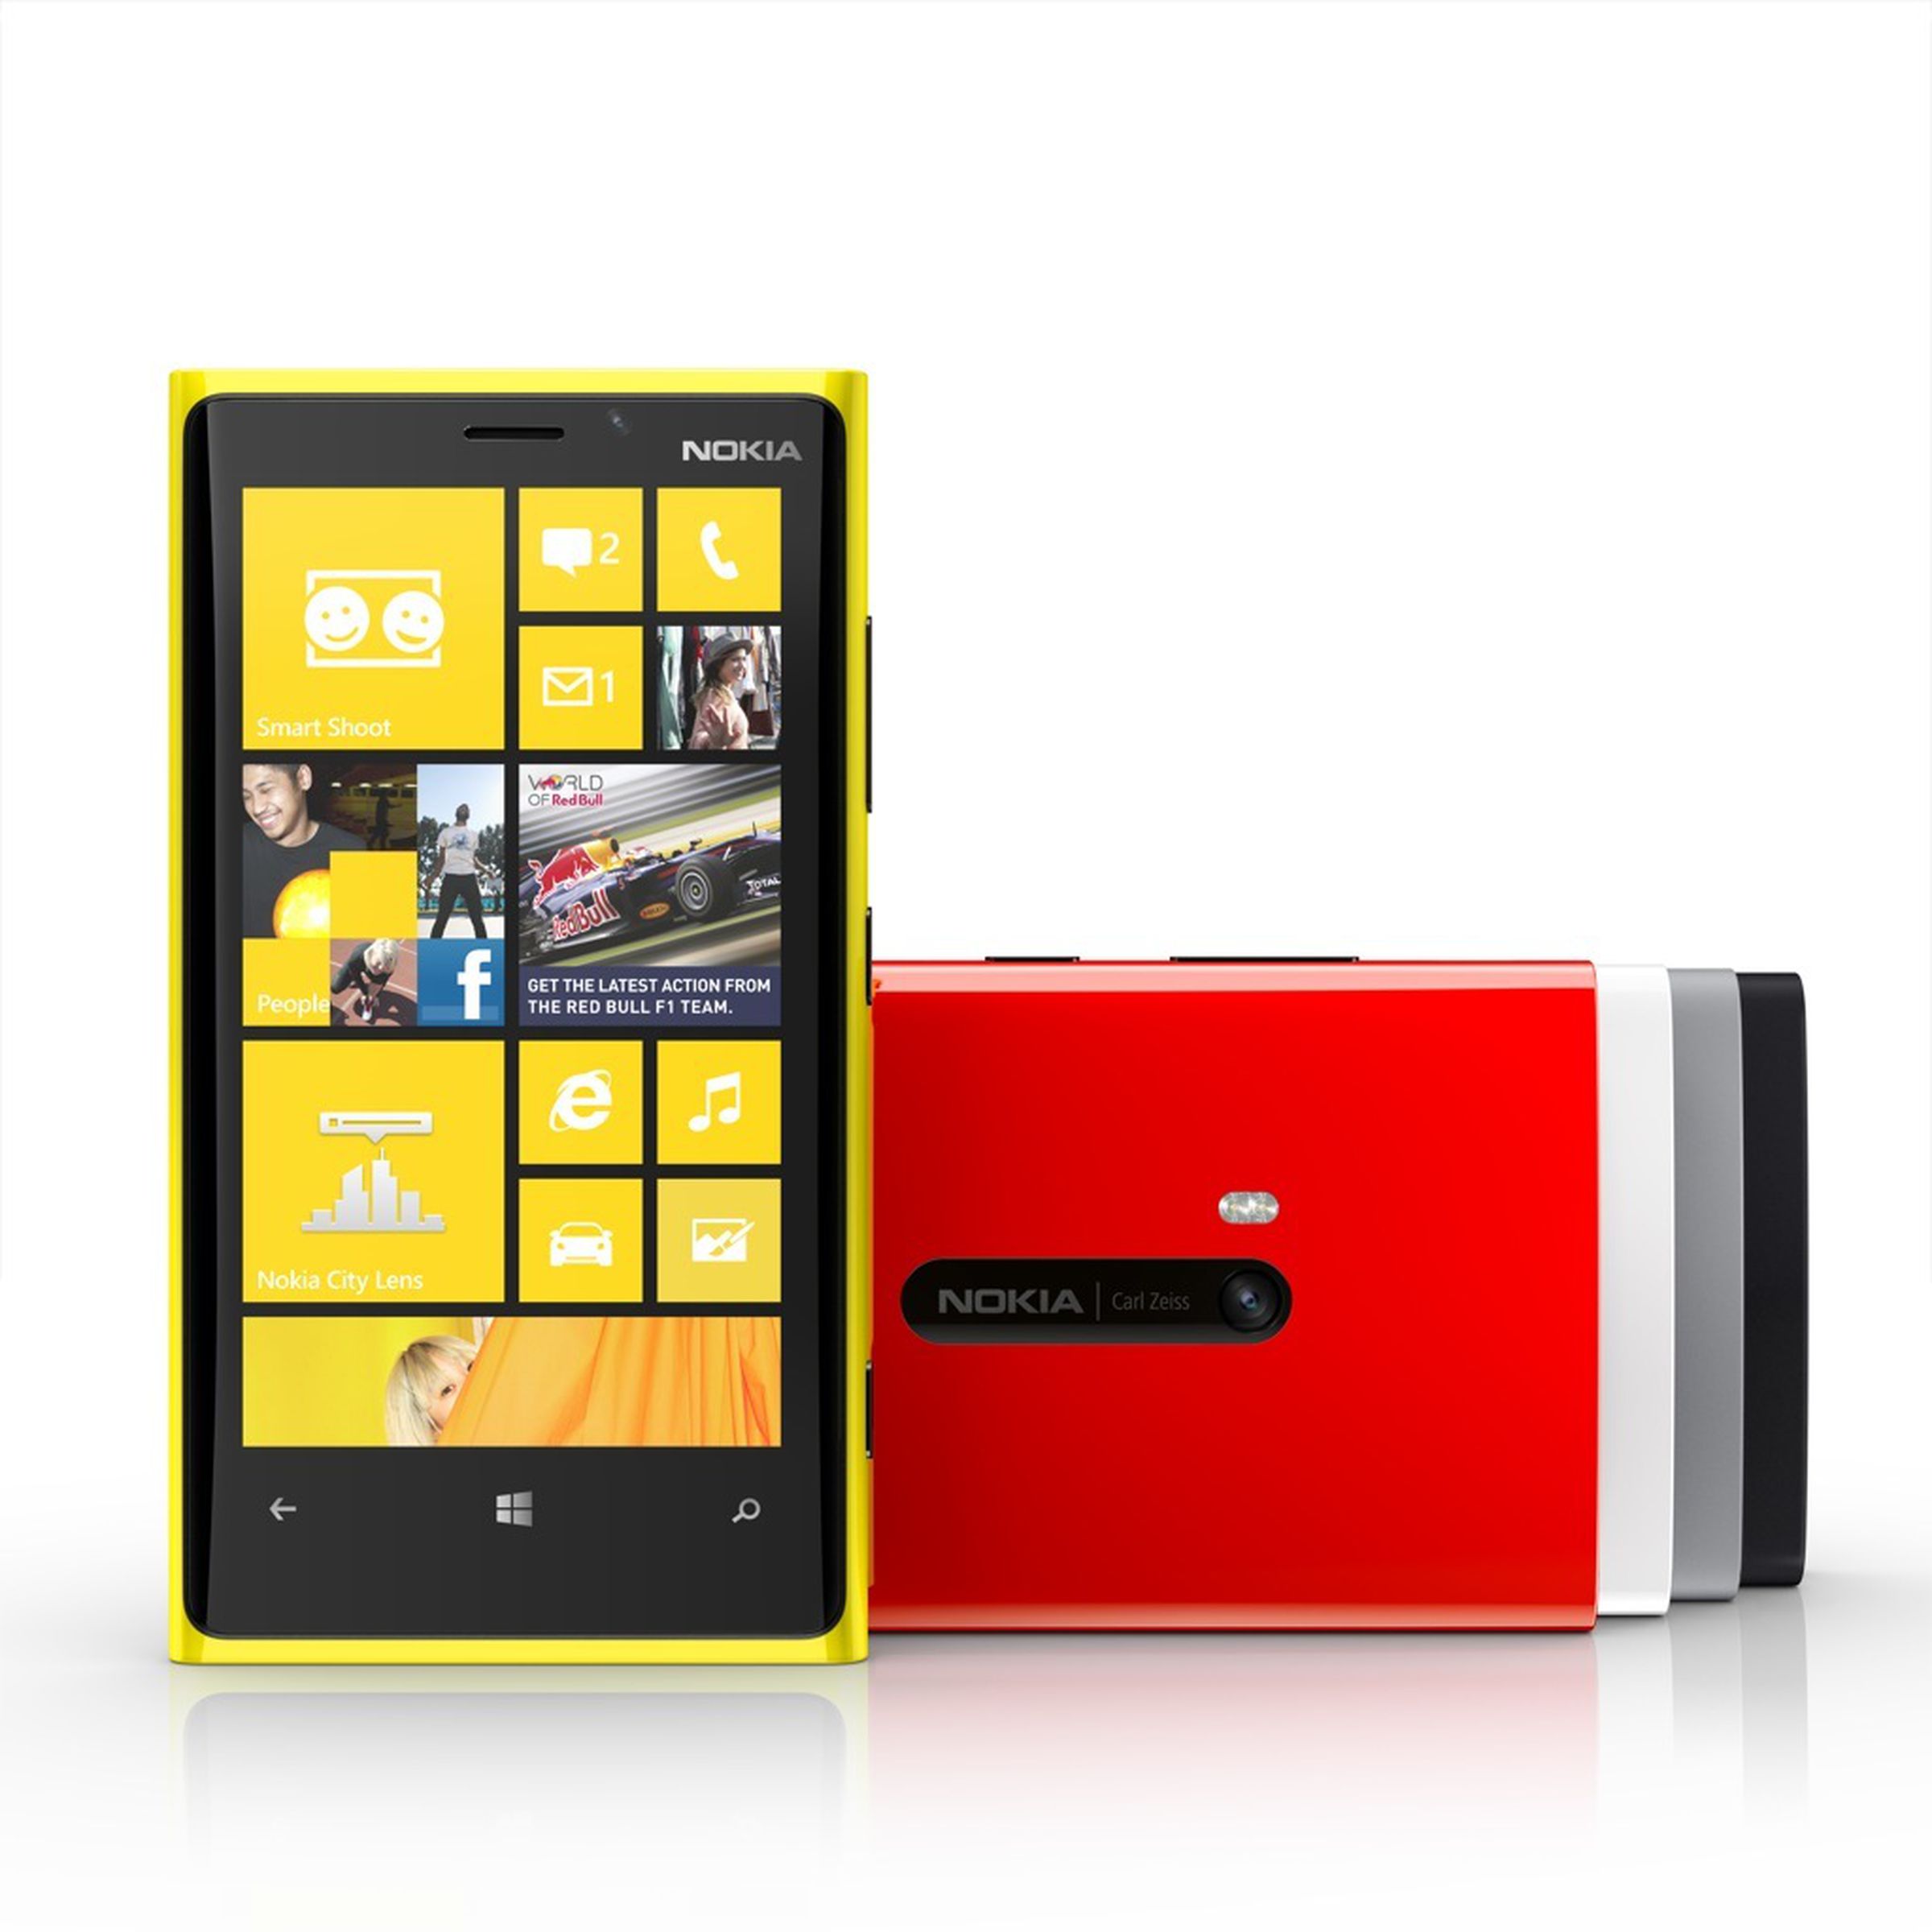 Nokia Lumia 920 press pictures